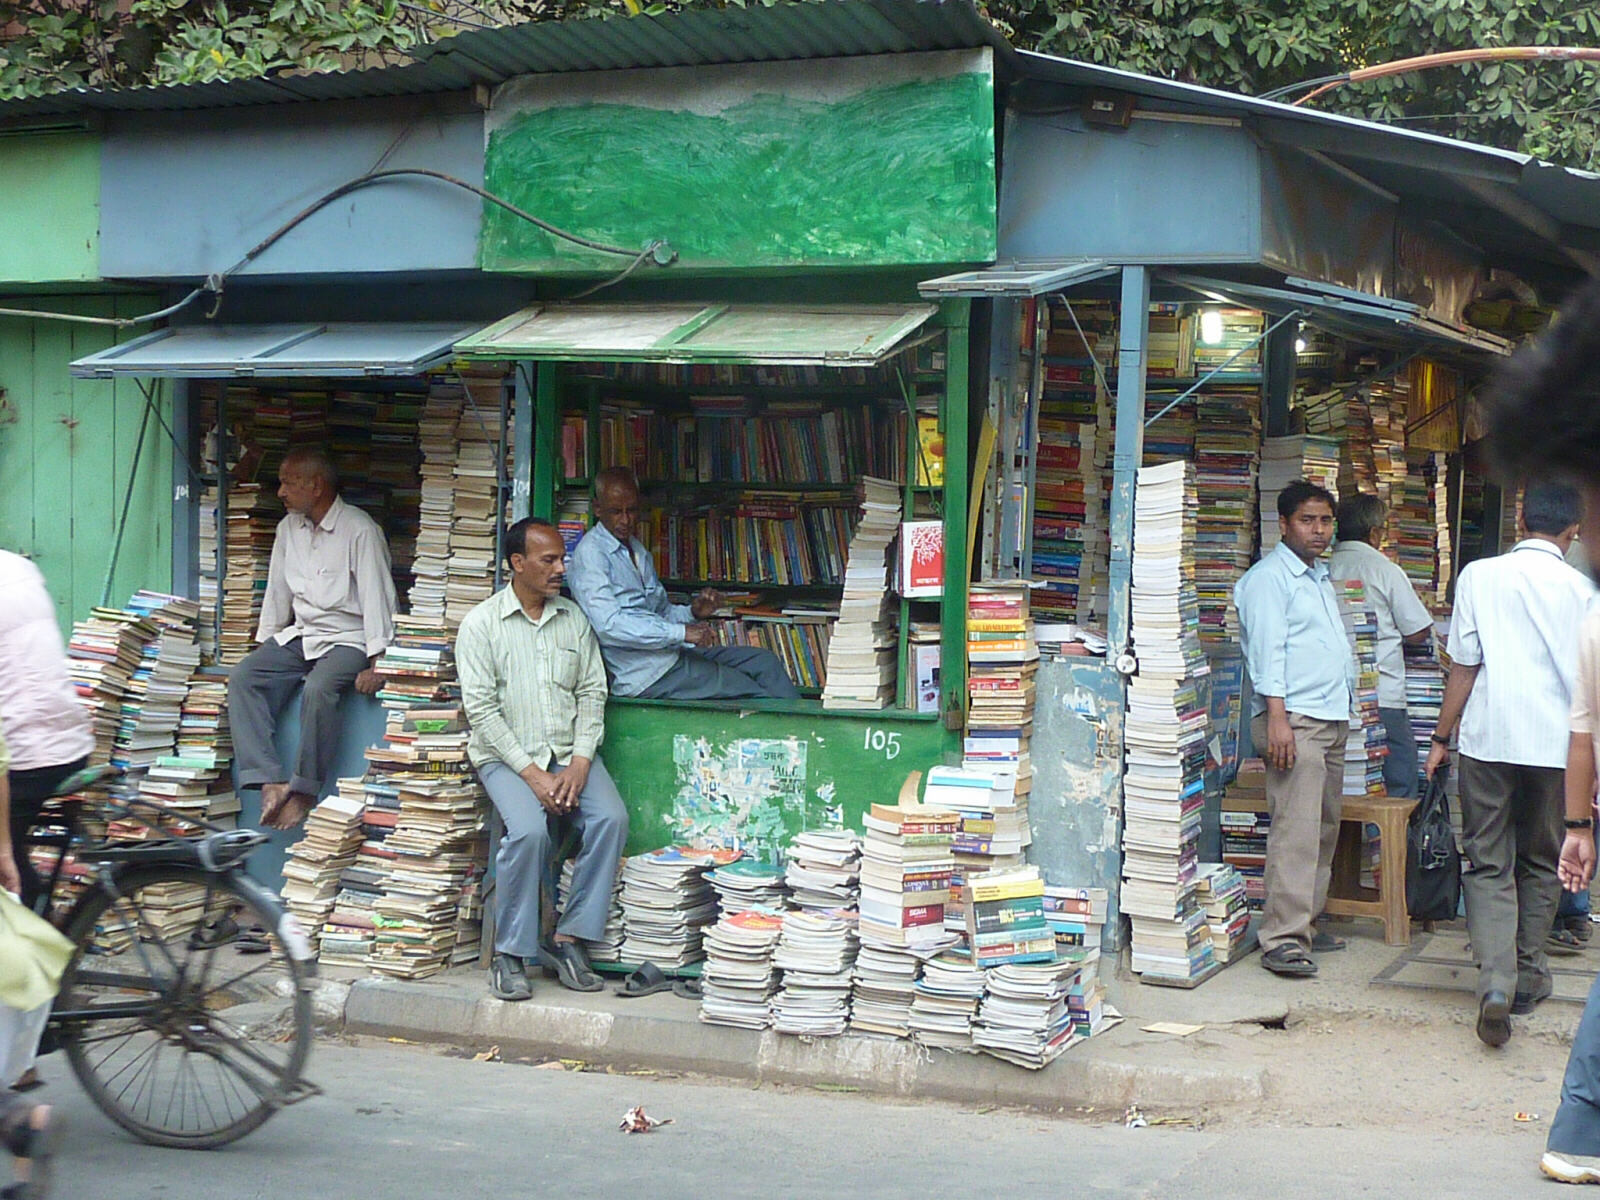 A bookshop in College Street, Calcutta